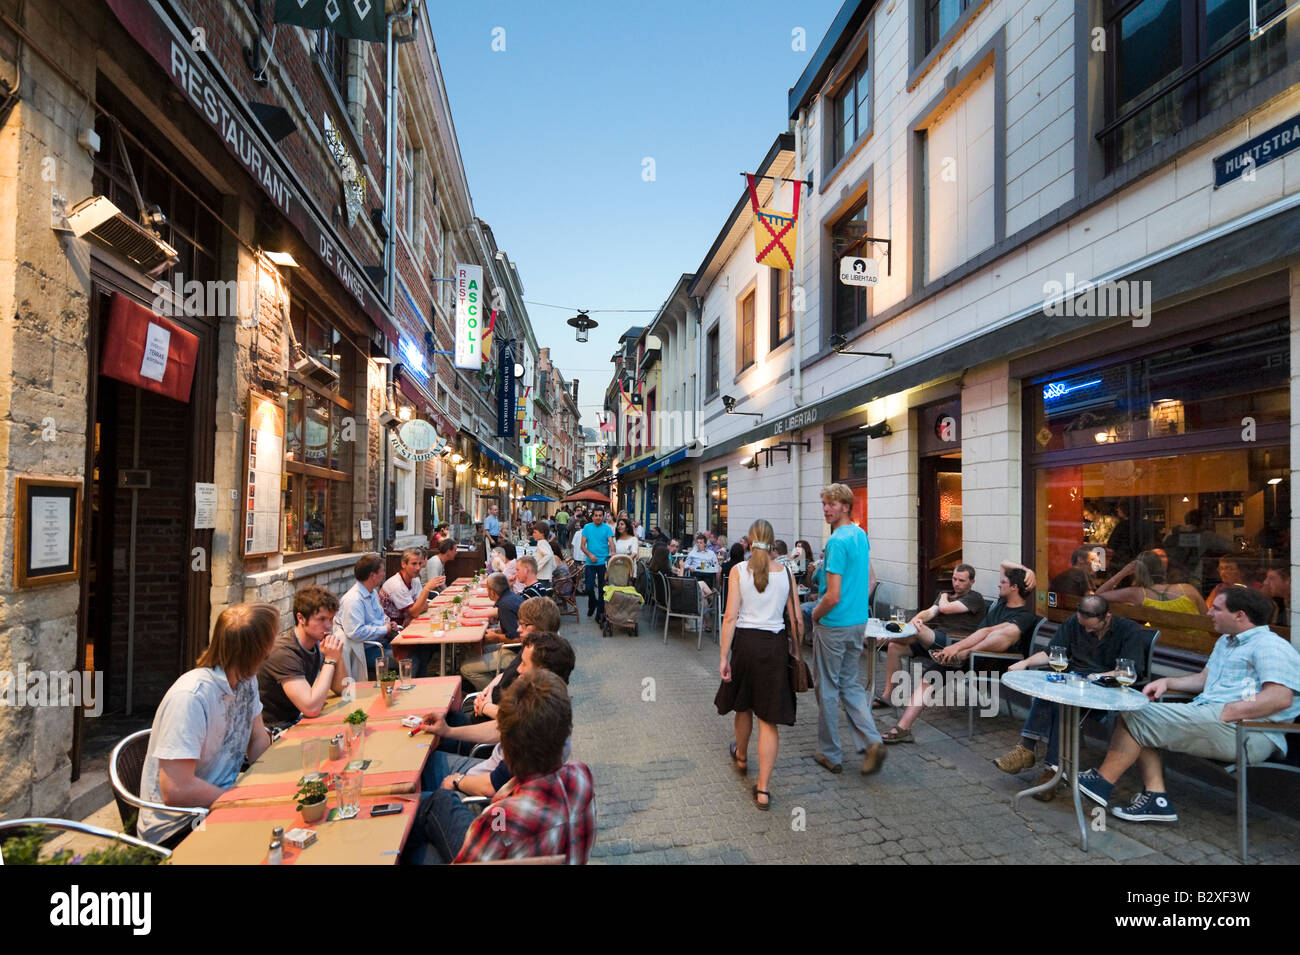 Bürgersteig-Restaurants in der Fußgängerzone Gasse Muntstraat, Leuven, Belgien Stockfoto